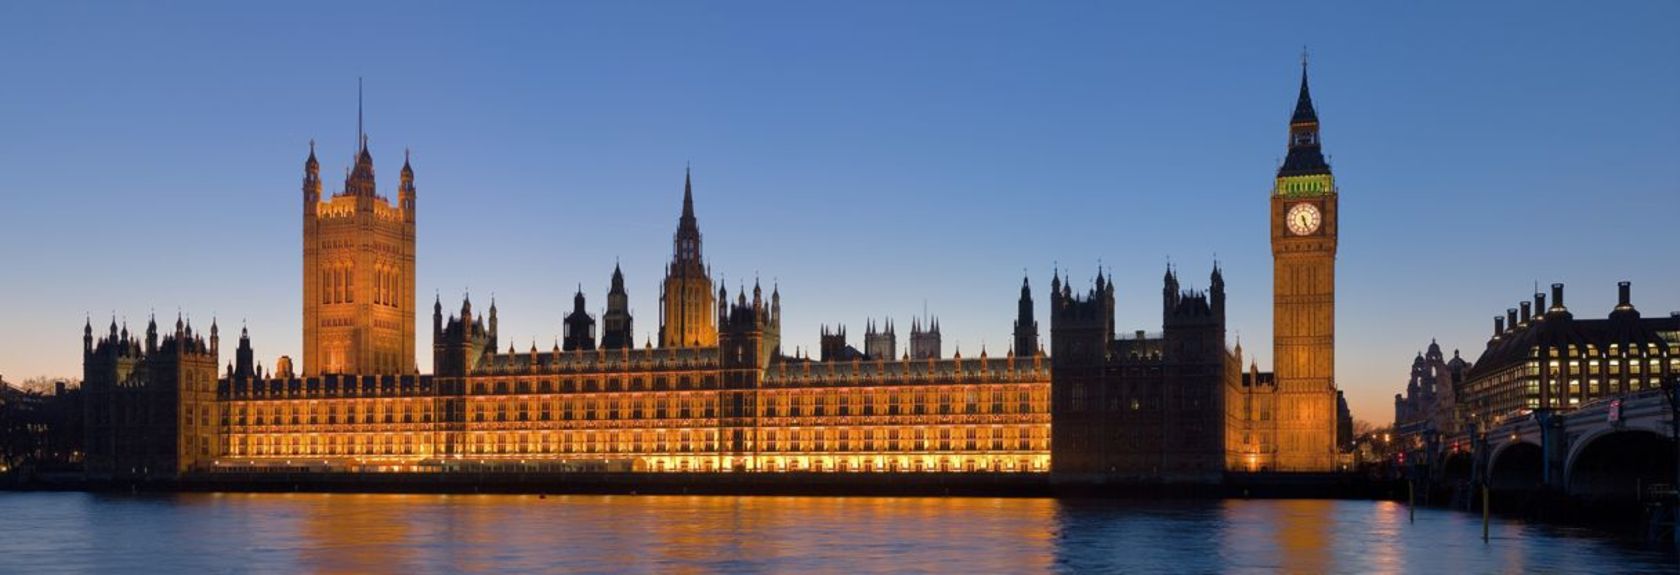 Nas margens do Tamisa fica o Palace of Westminster, também conhecido como as Houses of Parlament. O impressionante edifício neo-gótico no centro da cidade é a sede do Parlamento Britânico e é composto pela House of Commons e pela House of Lords.